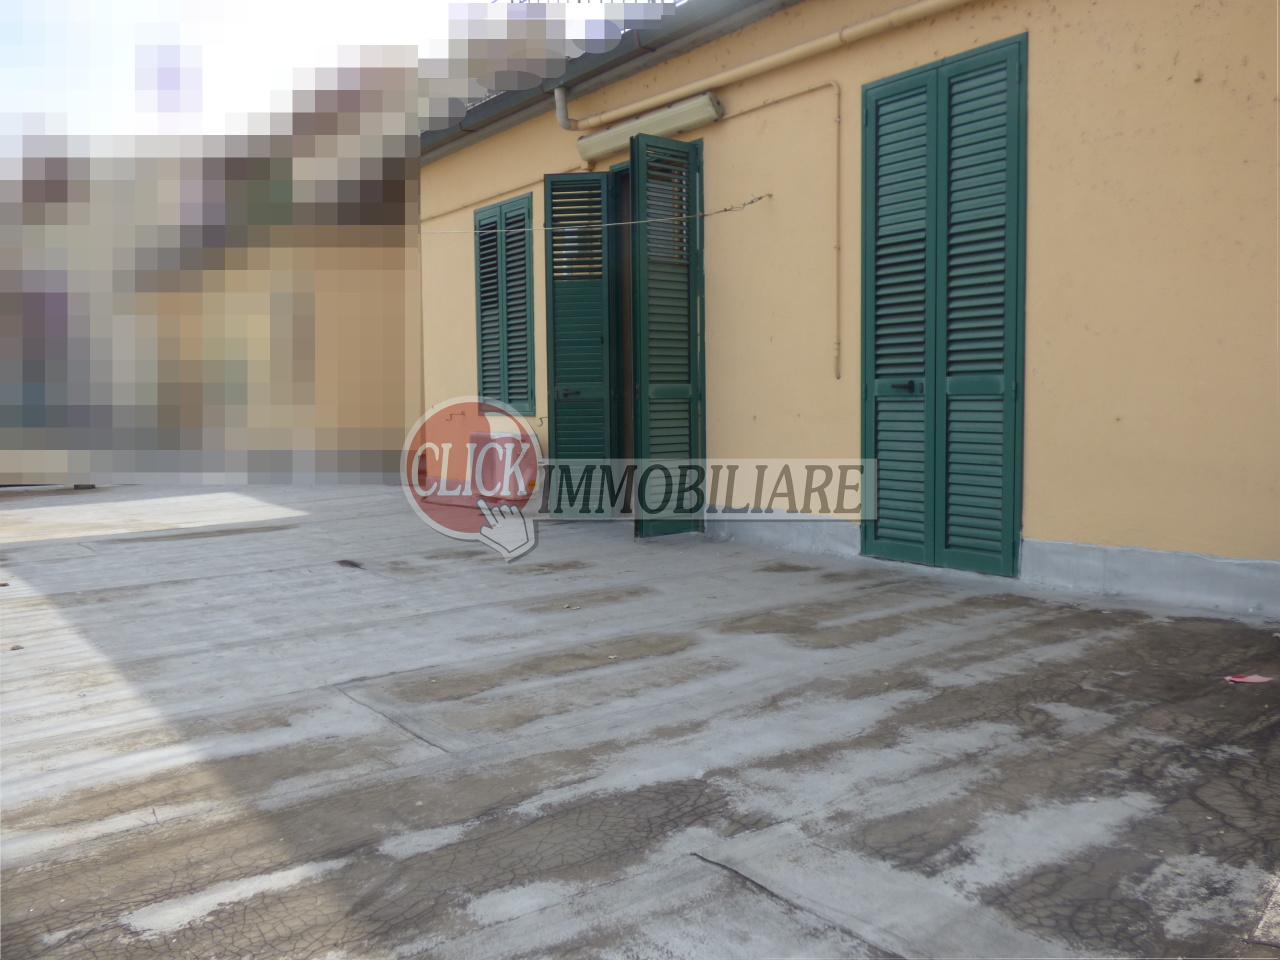 Appartamento in vendita a Borgo San Lorenzo, 4 locali, prezzo € 135.000 | PortaleAgenzieImmobiliari.it